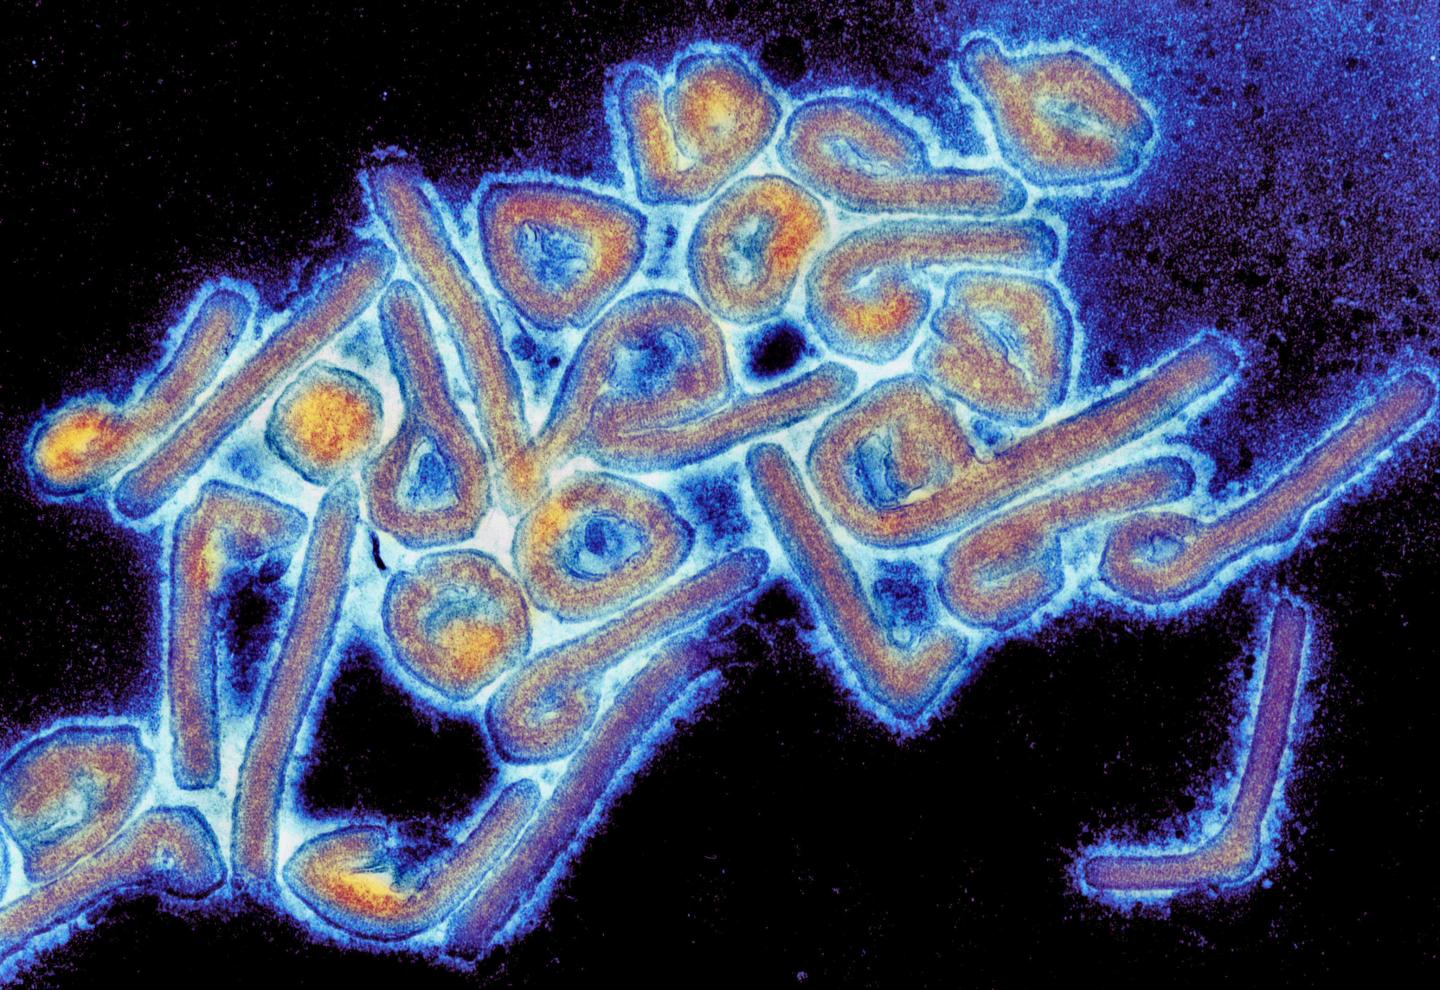 Una imagen del virus de Marburgo que fue descripto por primera vez en 1967 (Tom Geisbert, University of Texas Medical Branch)